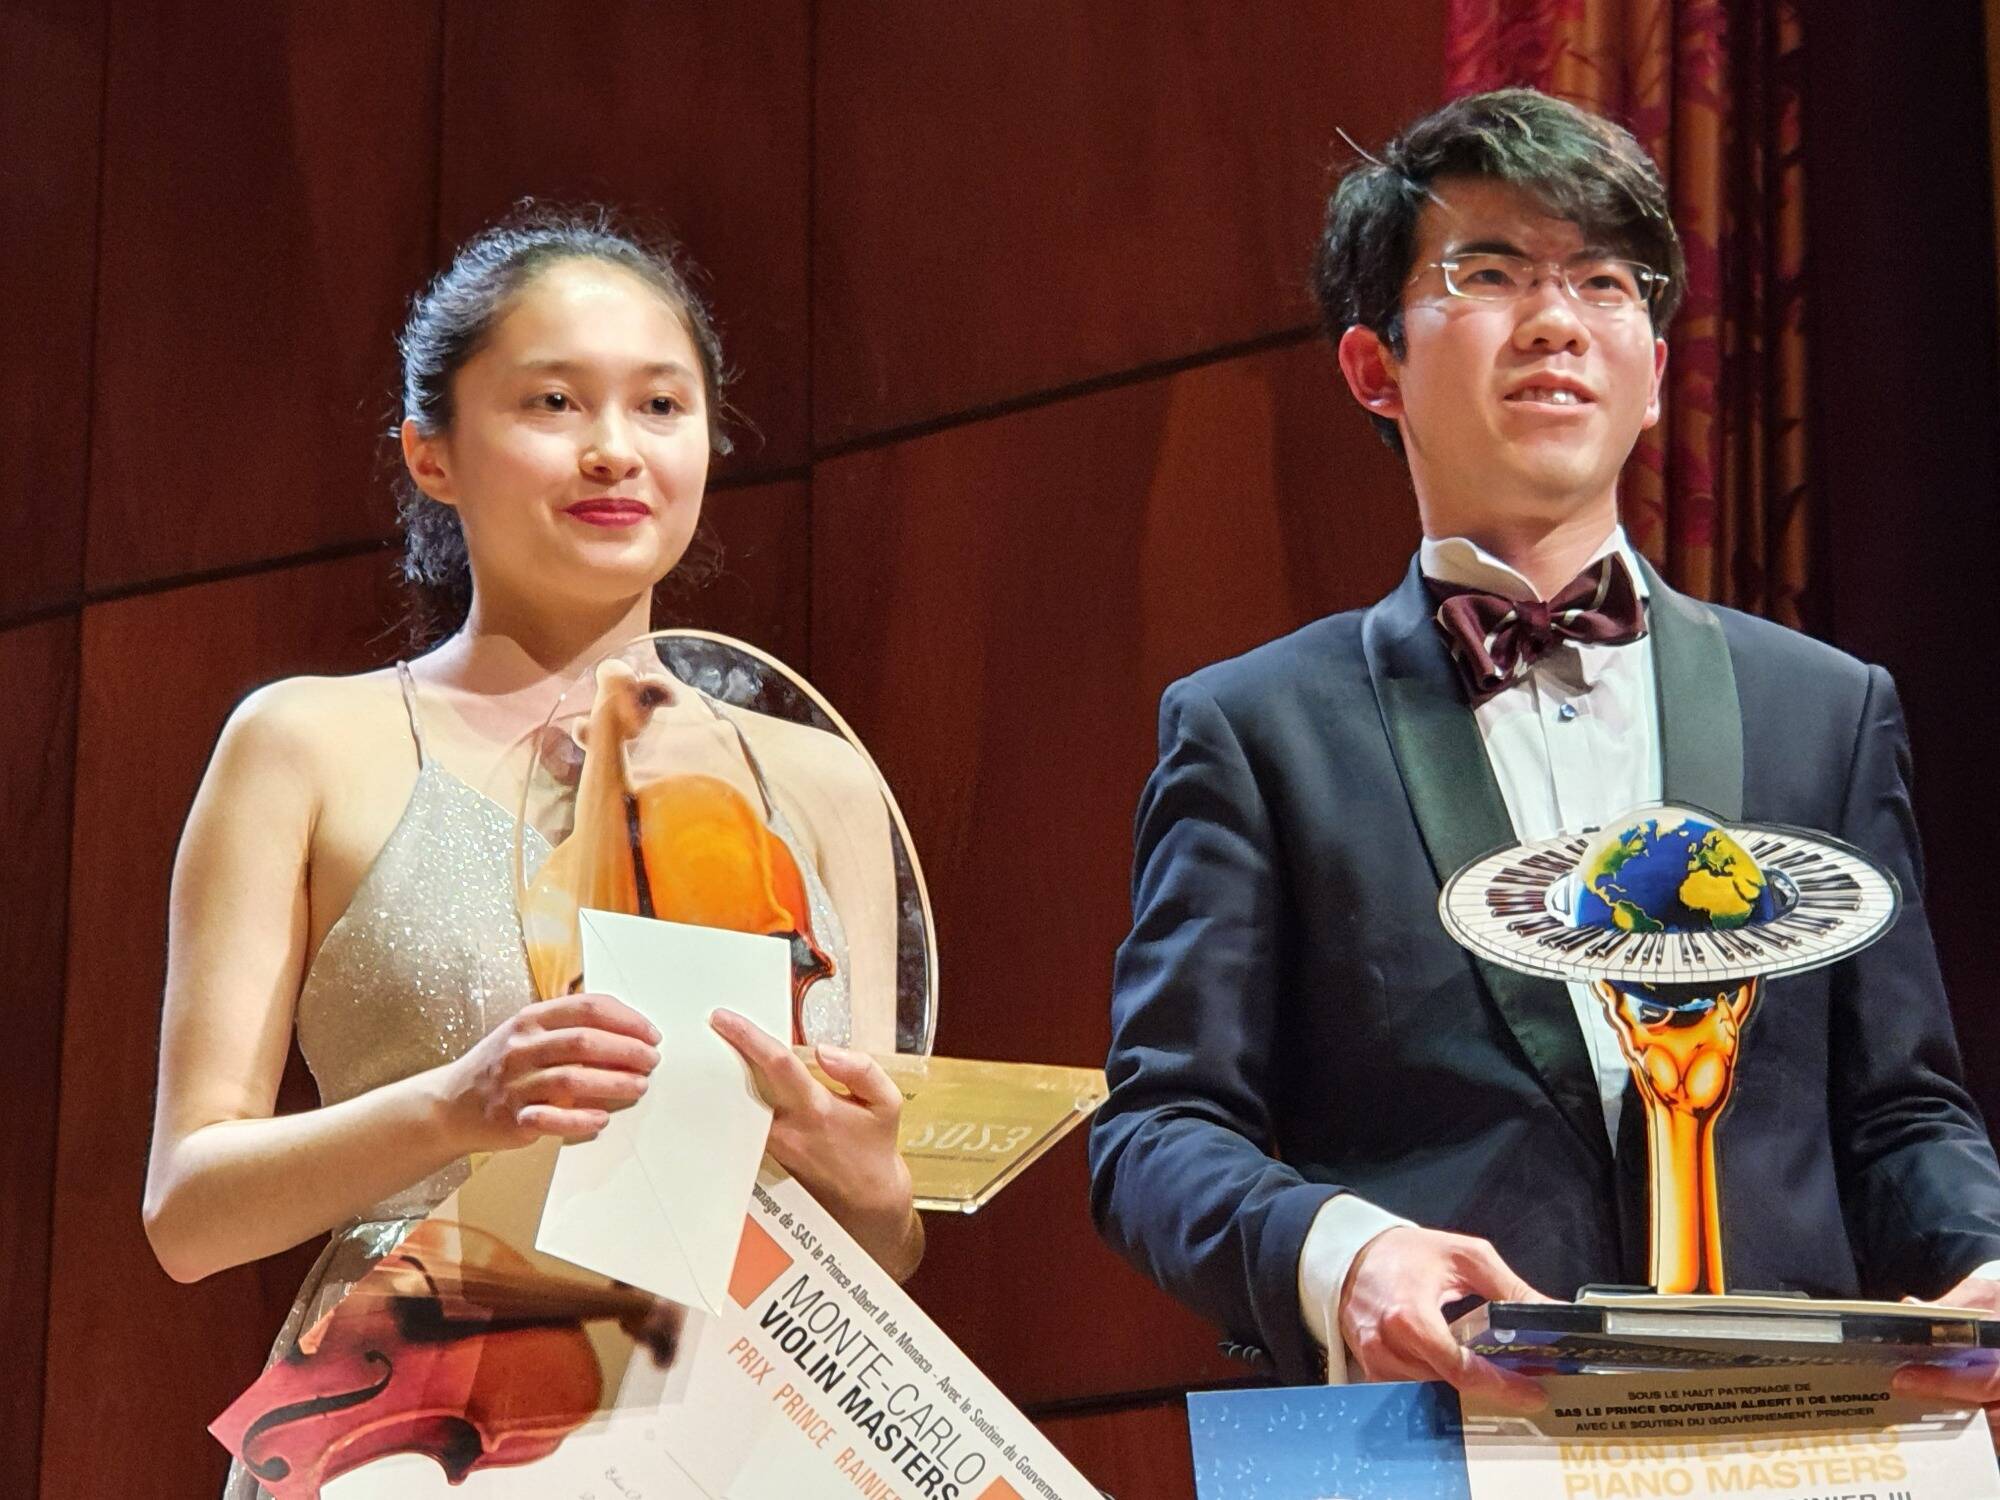 Un trionfo franco-cinese nella famosa esibizione di violino e pianoforte di Monaco